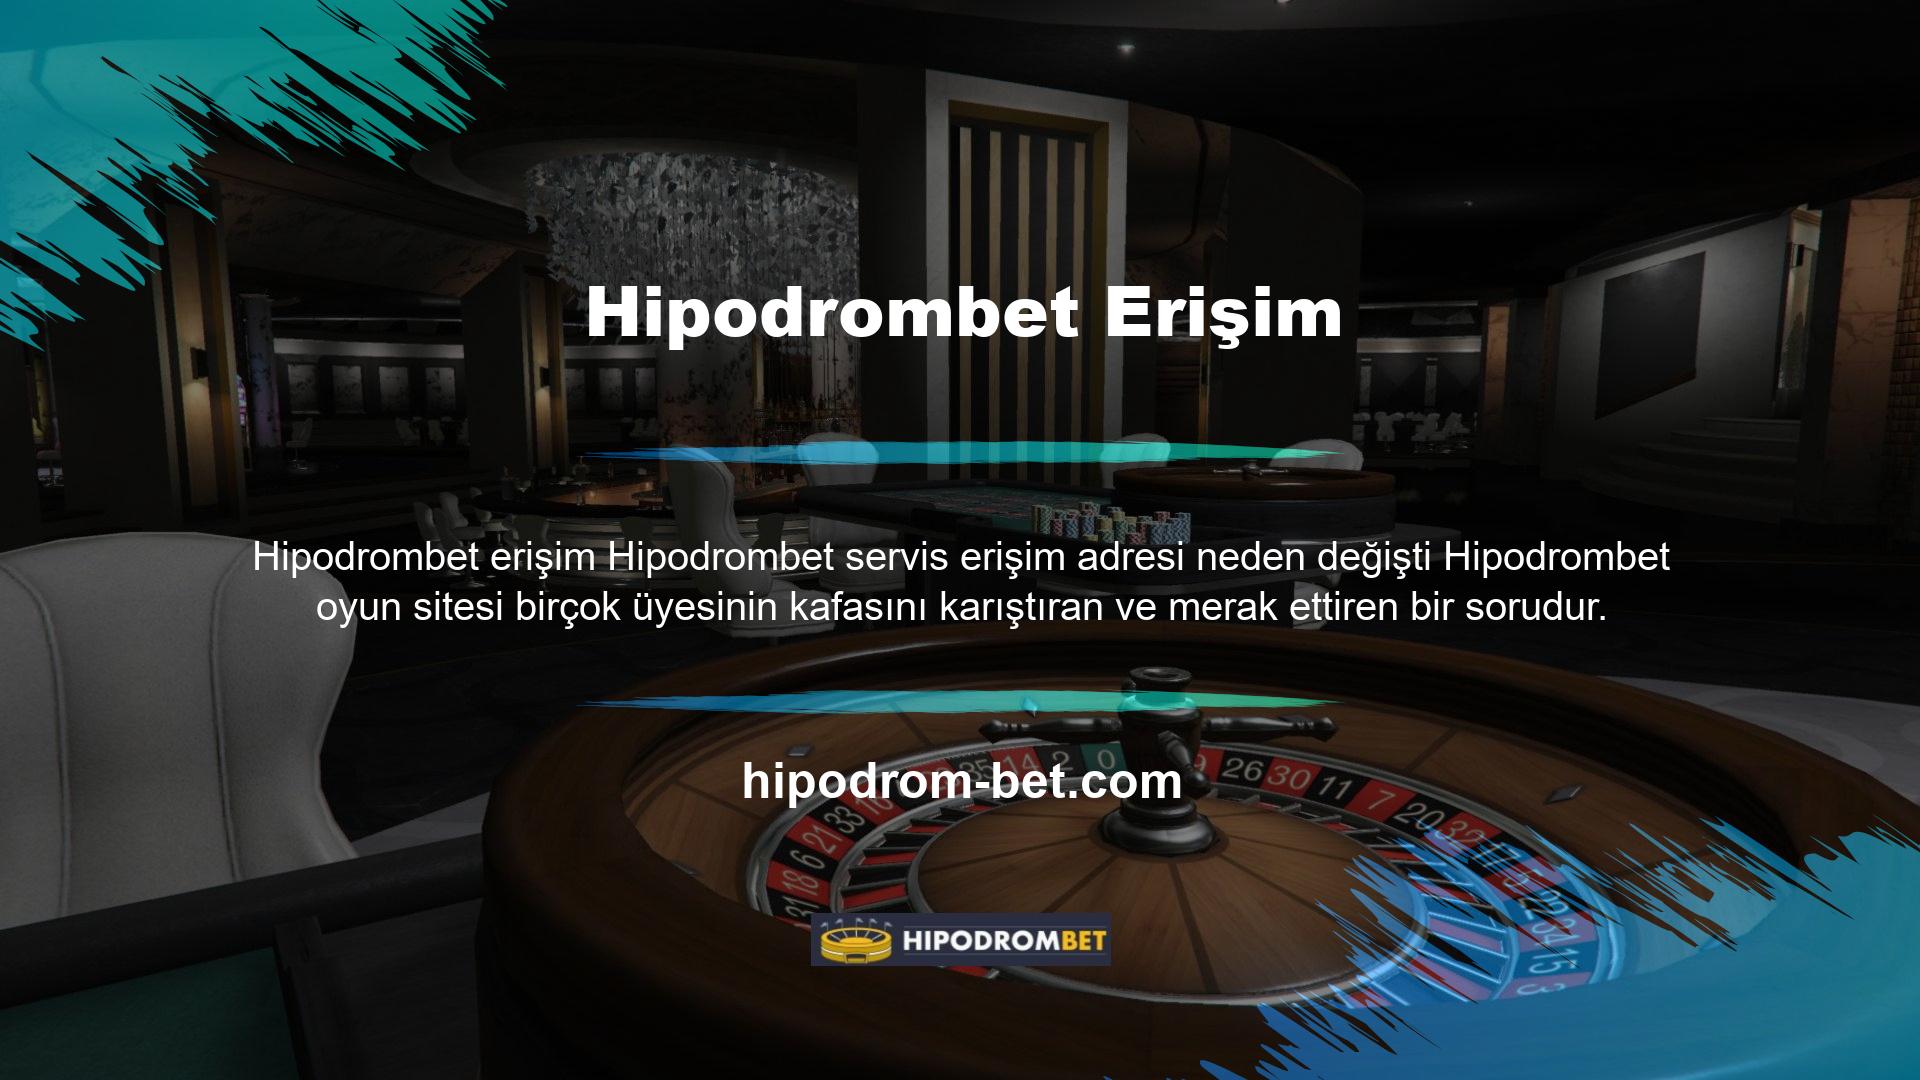 Hipodrombet oyun sitesinde giriş adresim neden değişti? Türk casino piyasasında Hipodrombet casino, online casino ve casino erişim adresleri yasal olarak bloke edilmiş olup bu adreslere erişim bir süreliğine engellenmiştir